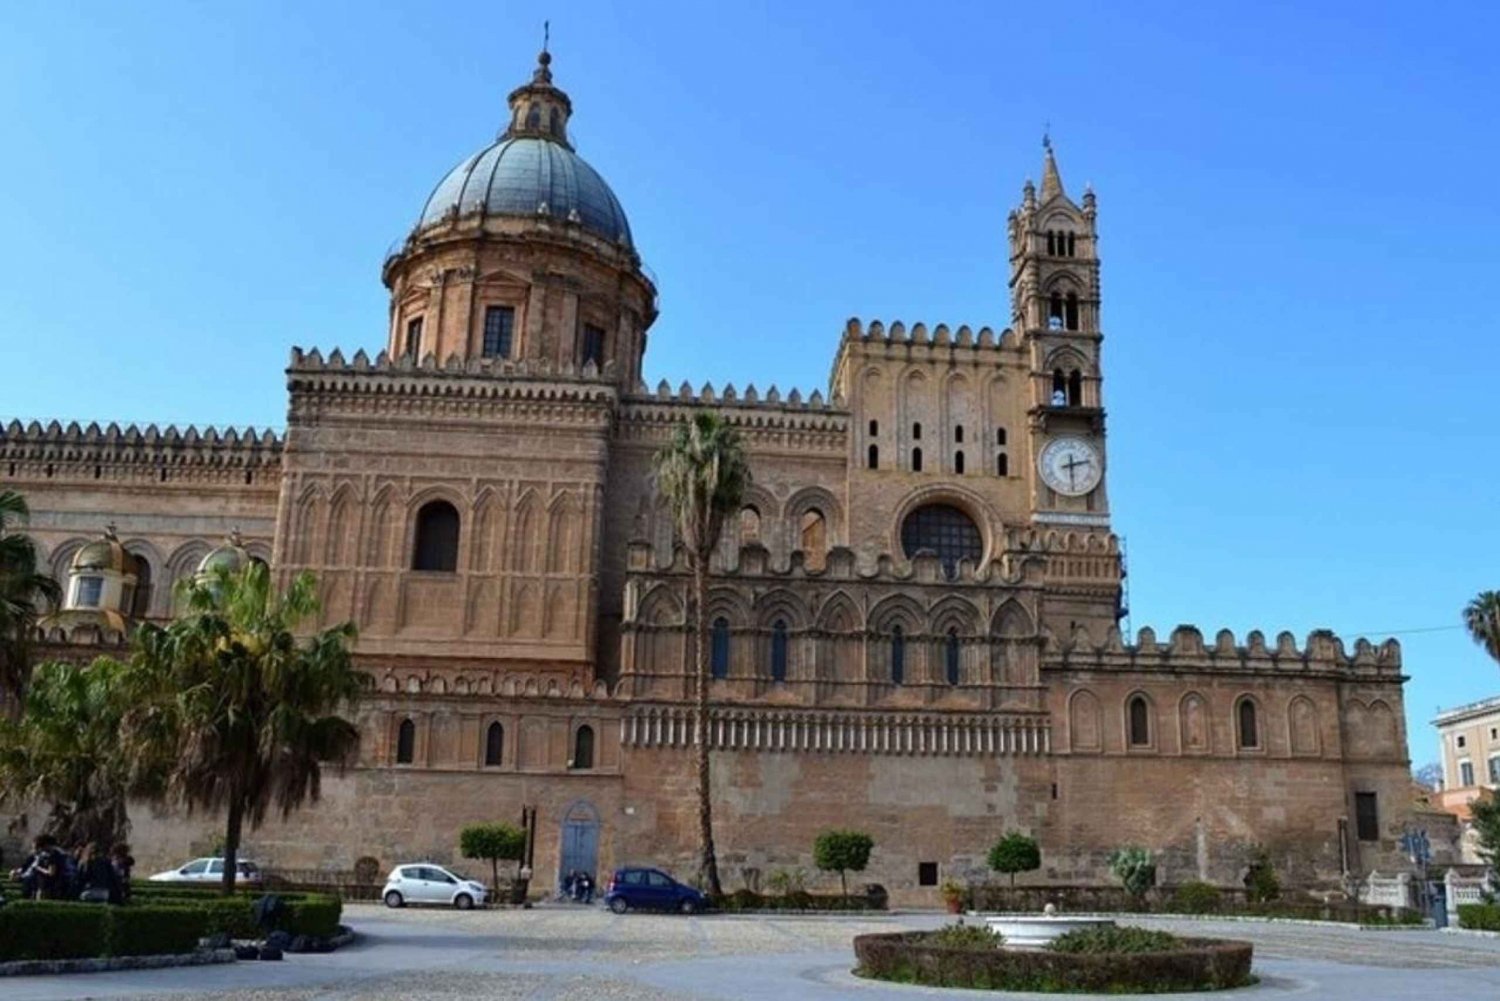 Palermo : nähtävyyksien kävelykierros Palermon nähtävyyksille